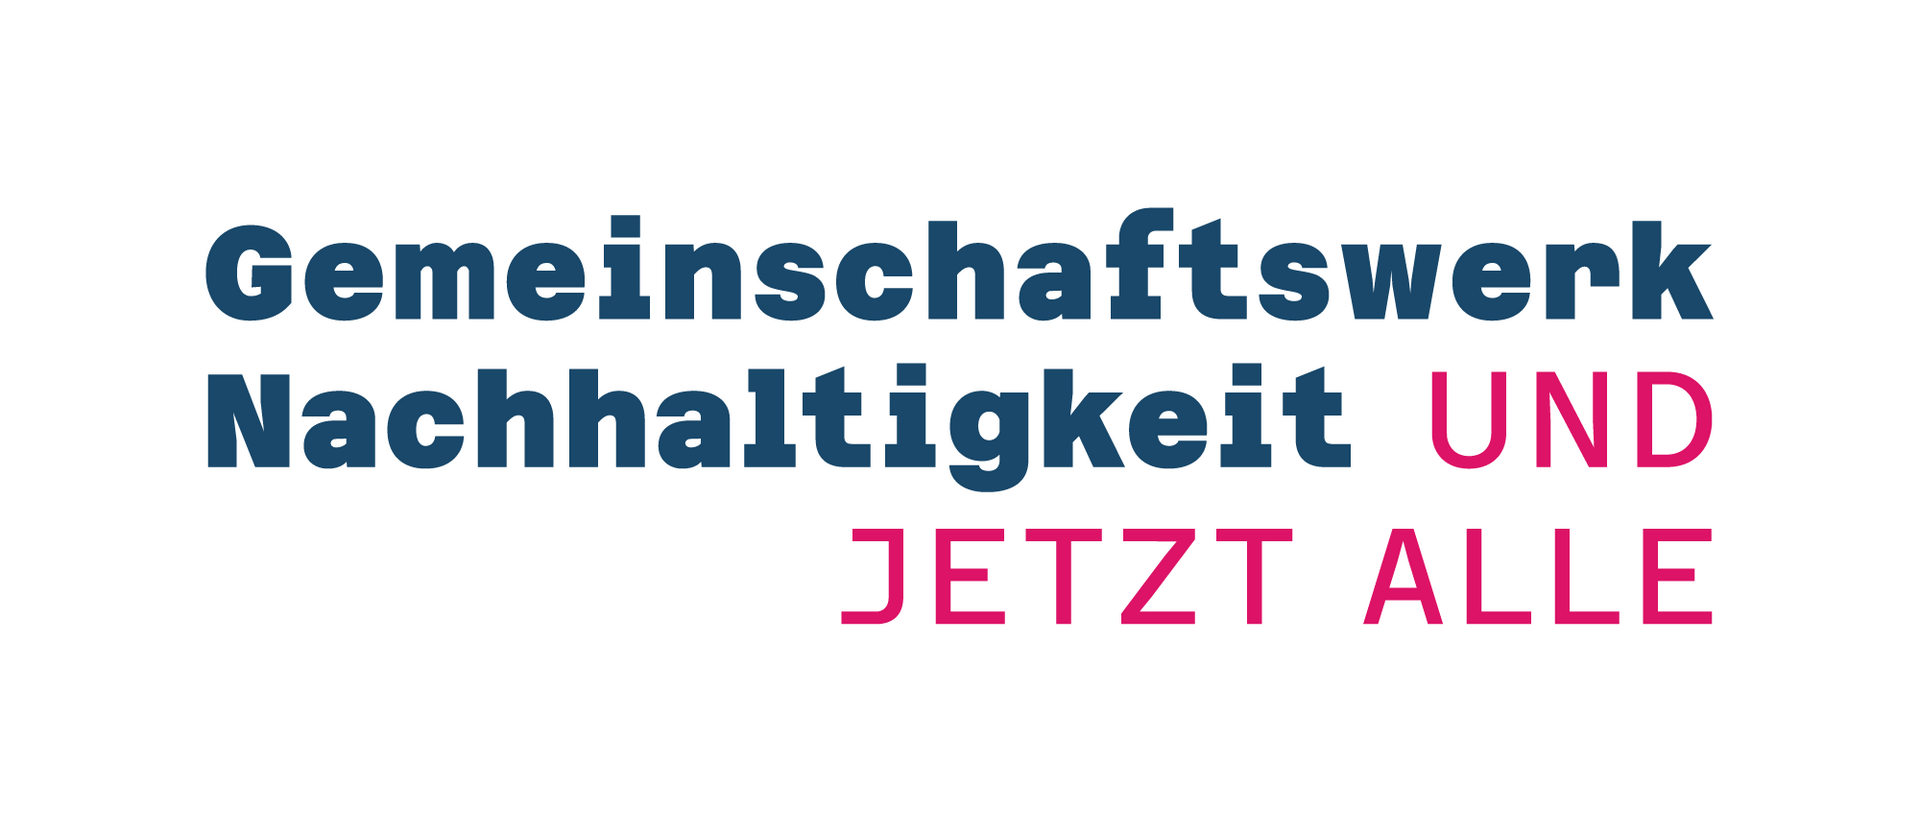 Logo des Gemeinschaftswerks Nachhaltigkeit mit dem Zusatz "Und jetzt alle" in Blau und Pink